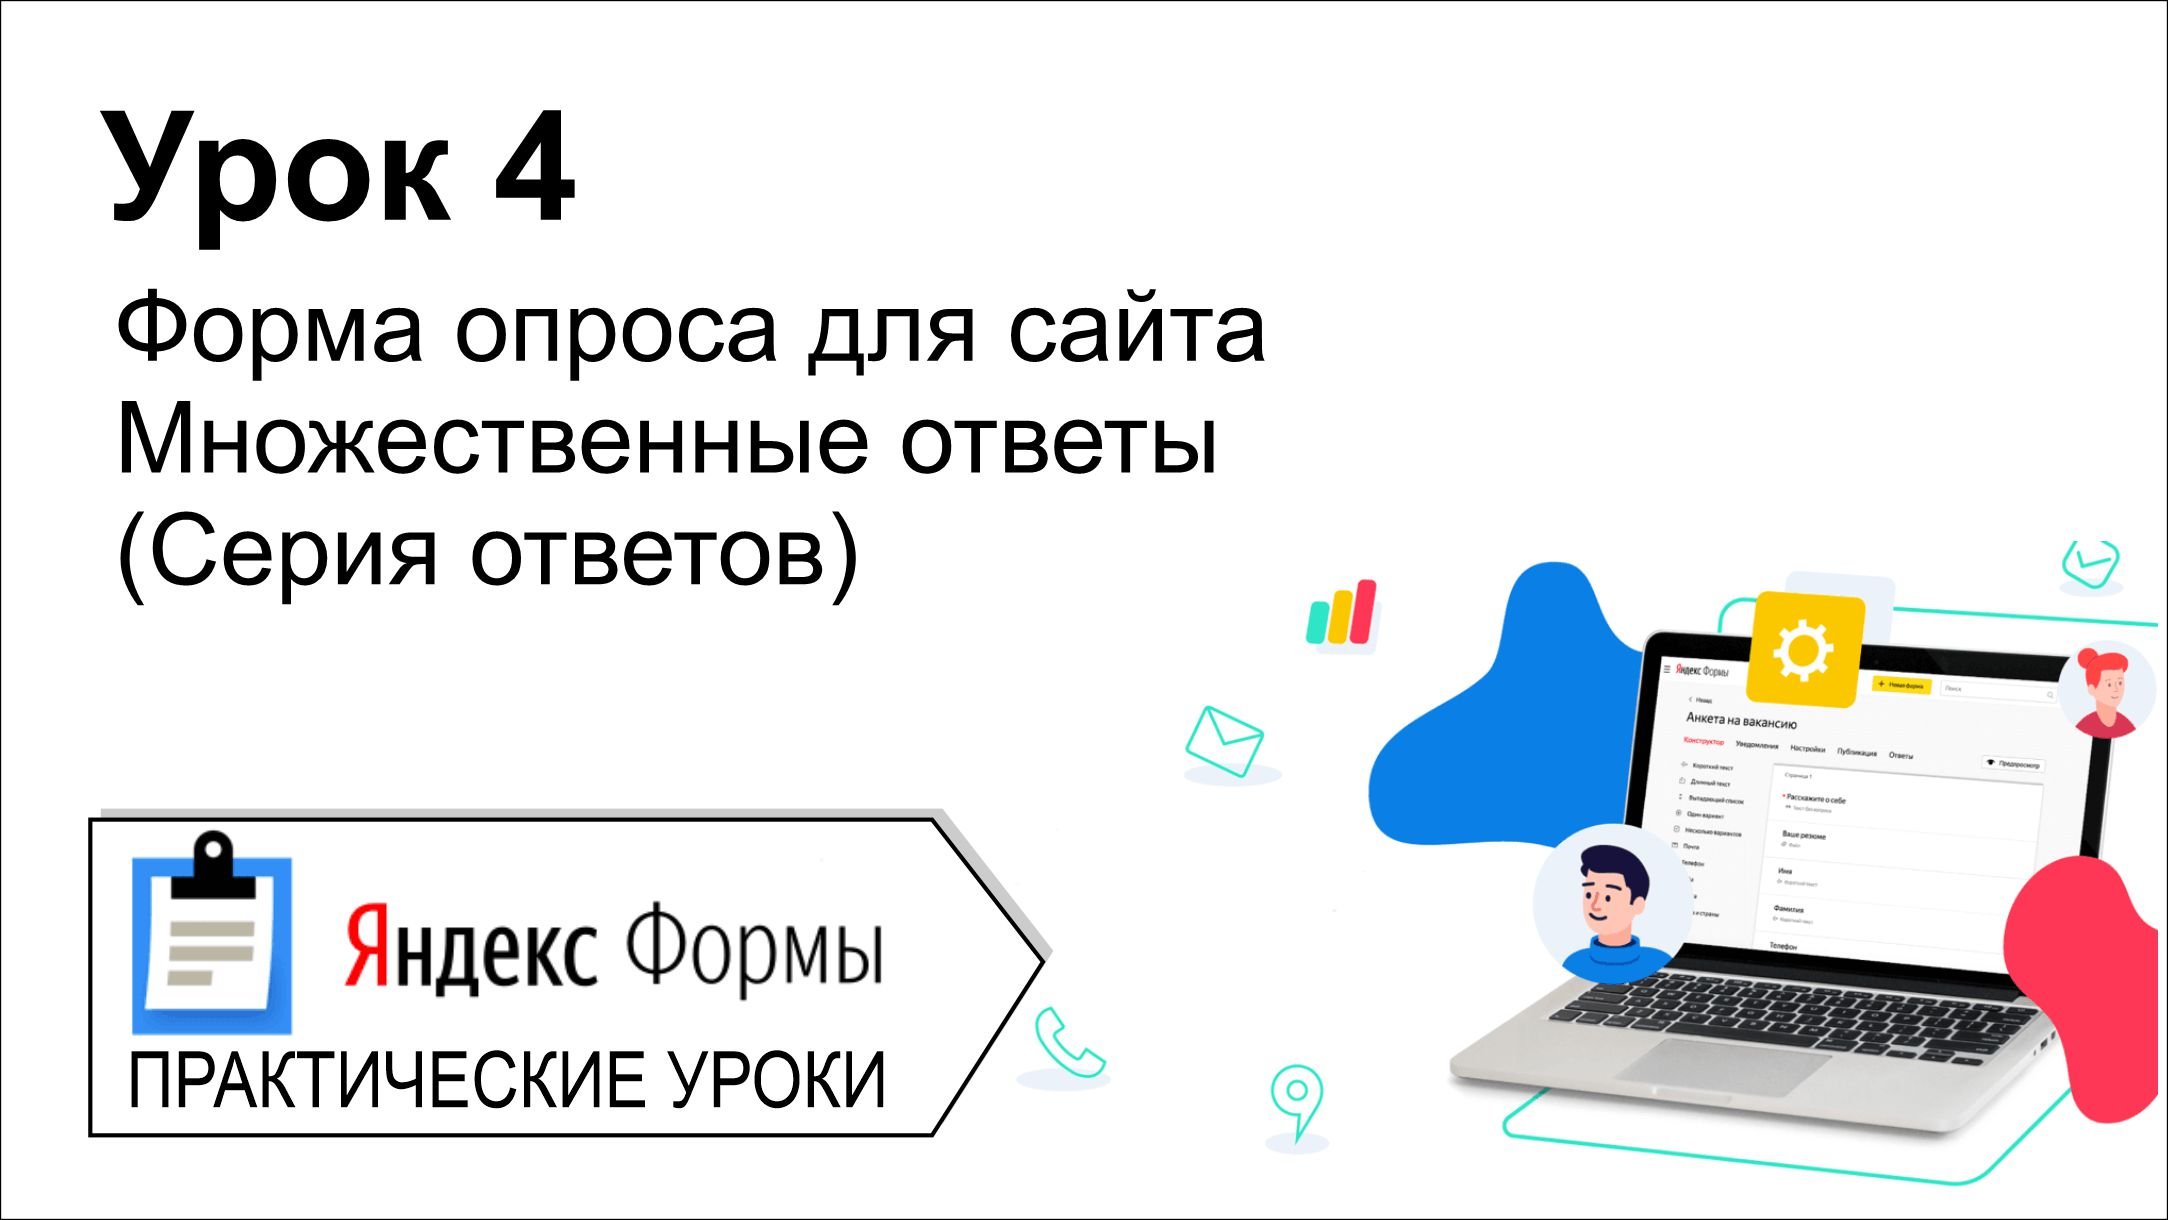 Яндекс формы. Урок 4. Форма опроса для сайта. Используем серию ответов.